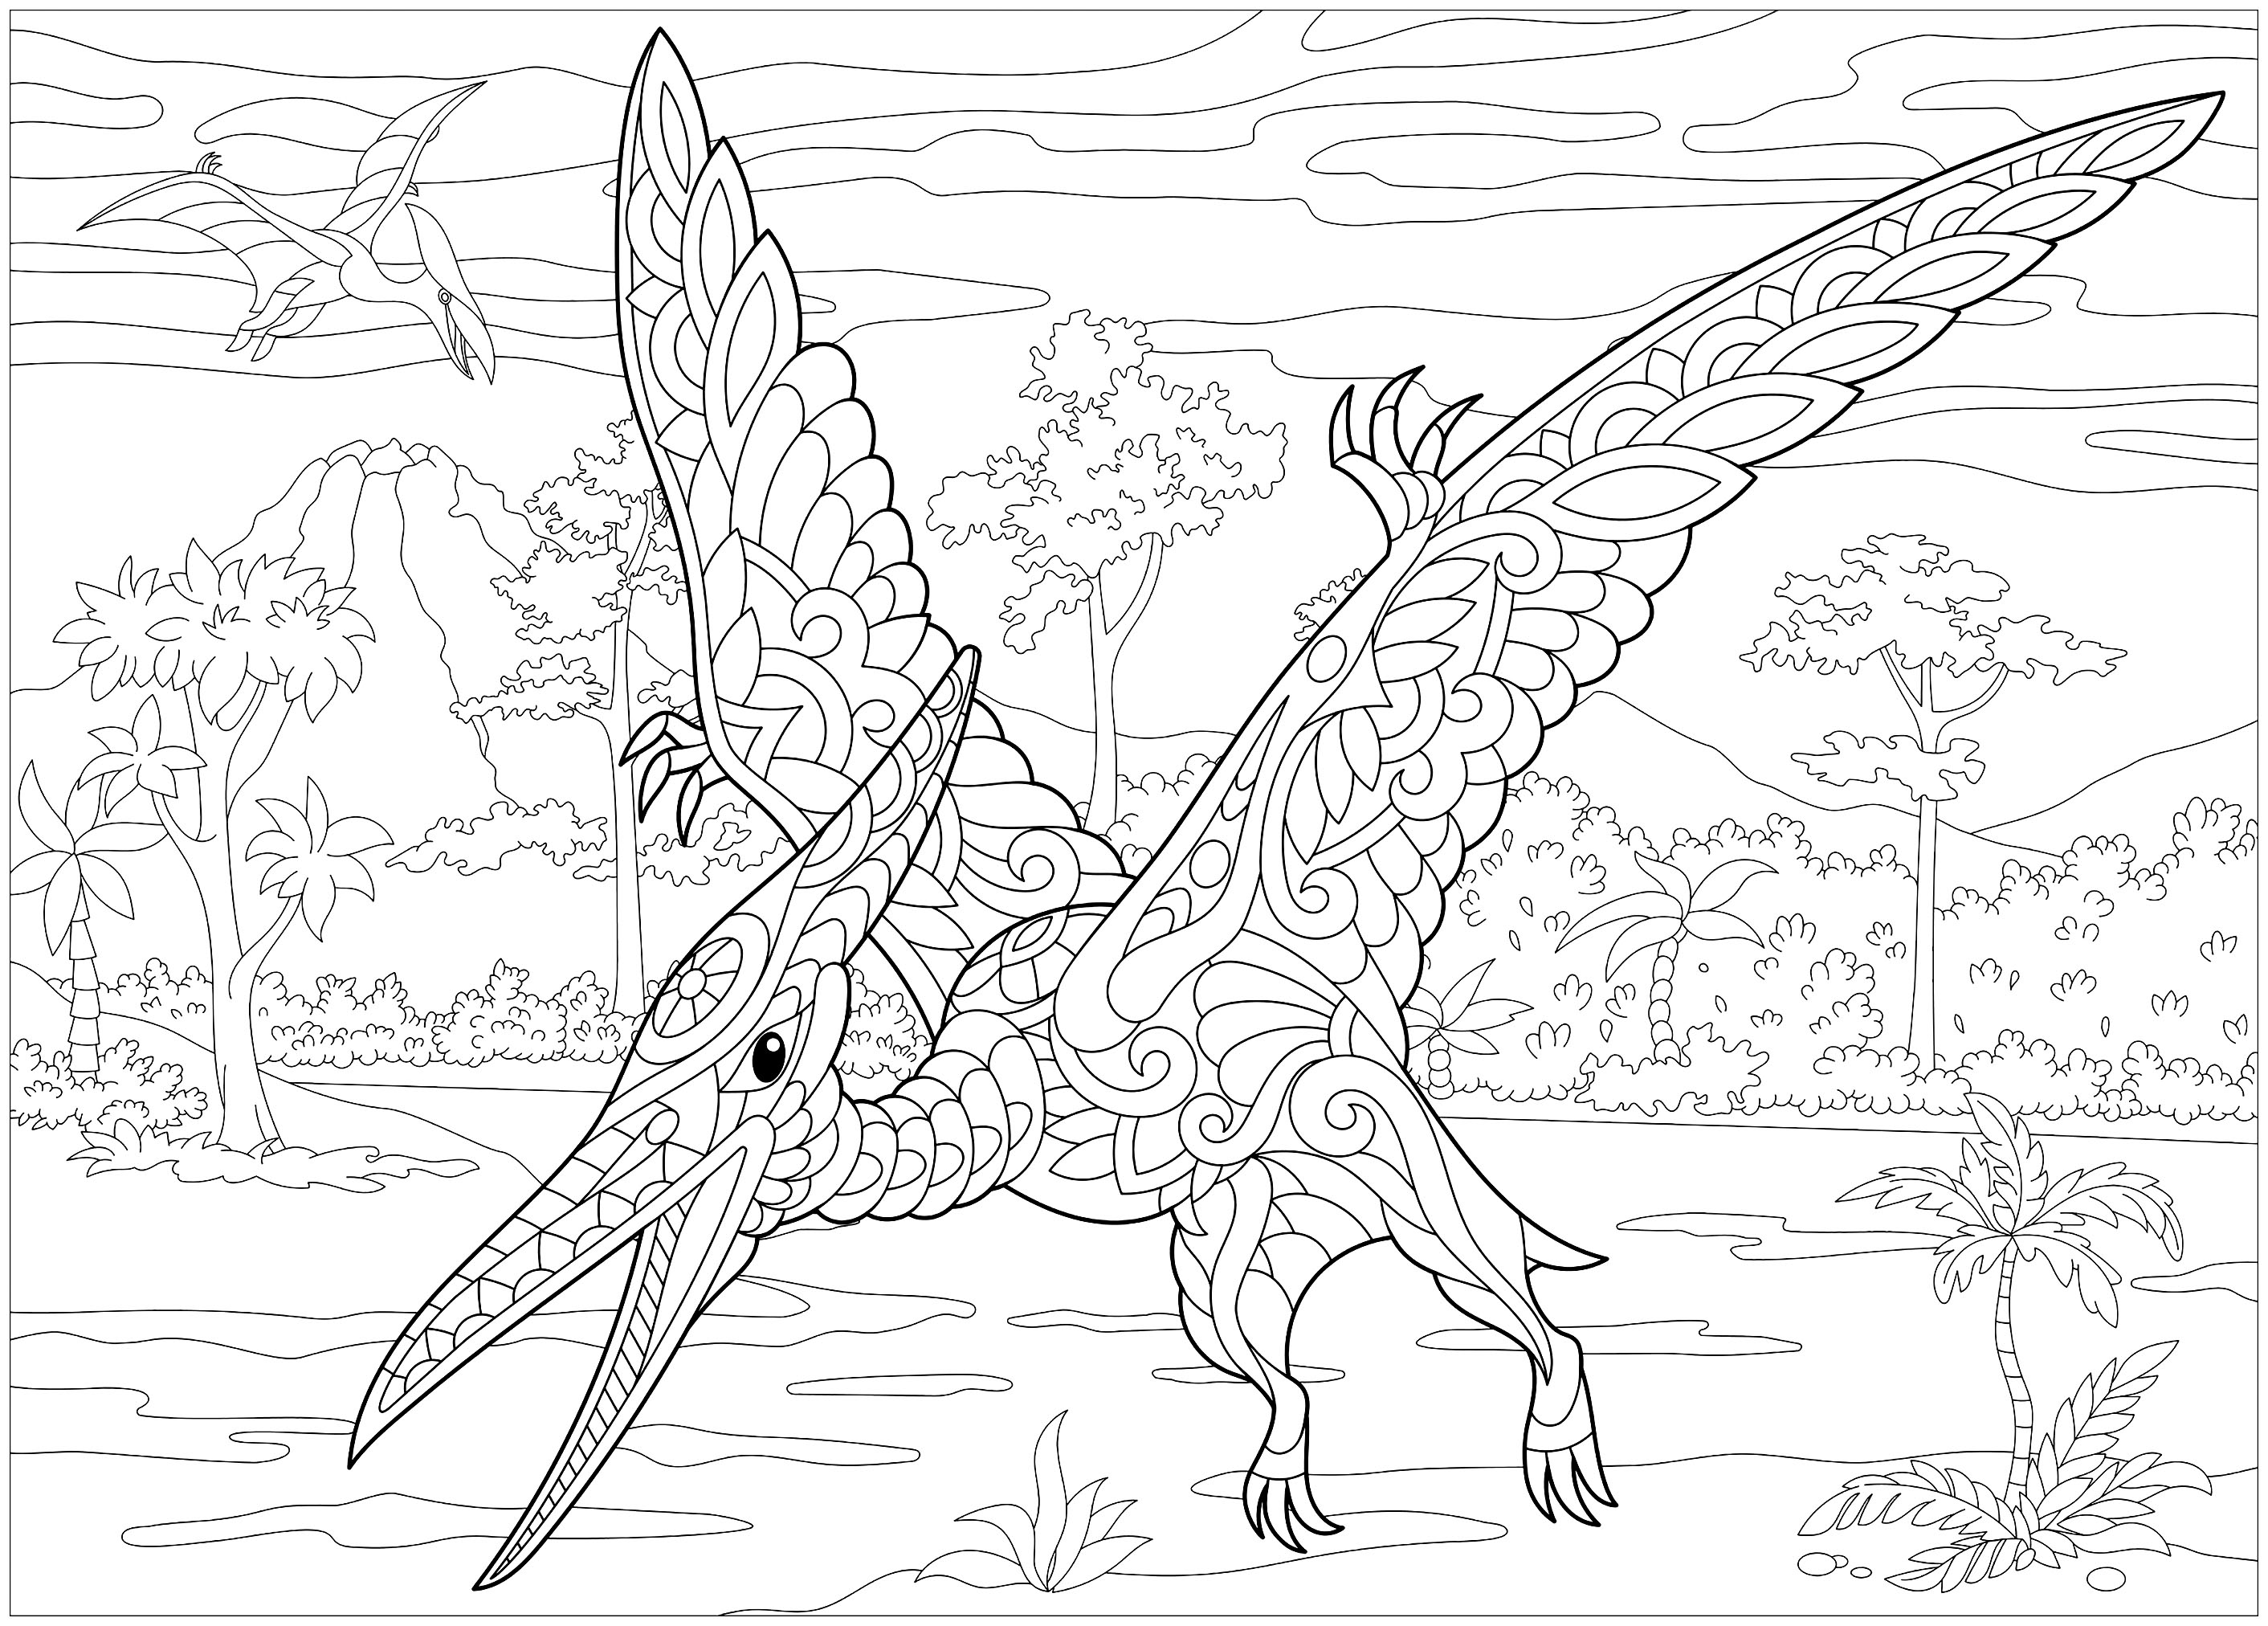 Desenhos grátis para colorir de Dinossauros para baixar, para crianças, Artista : Sybirko   Fonte : 123rf